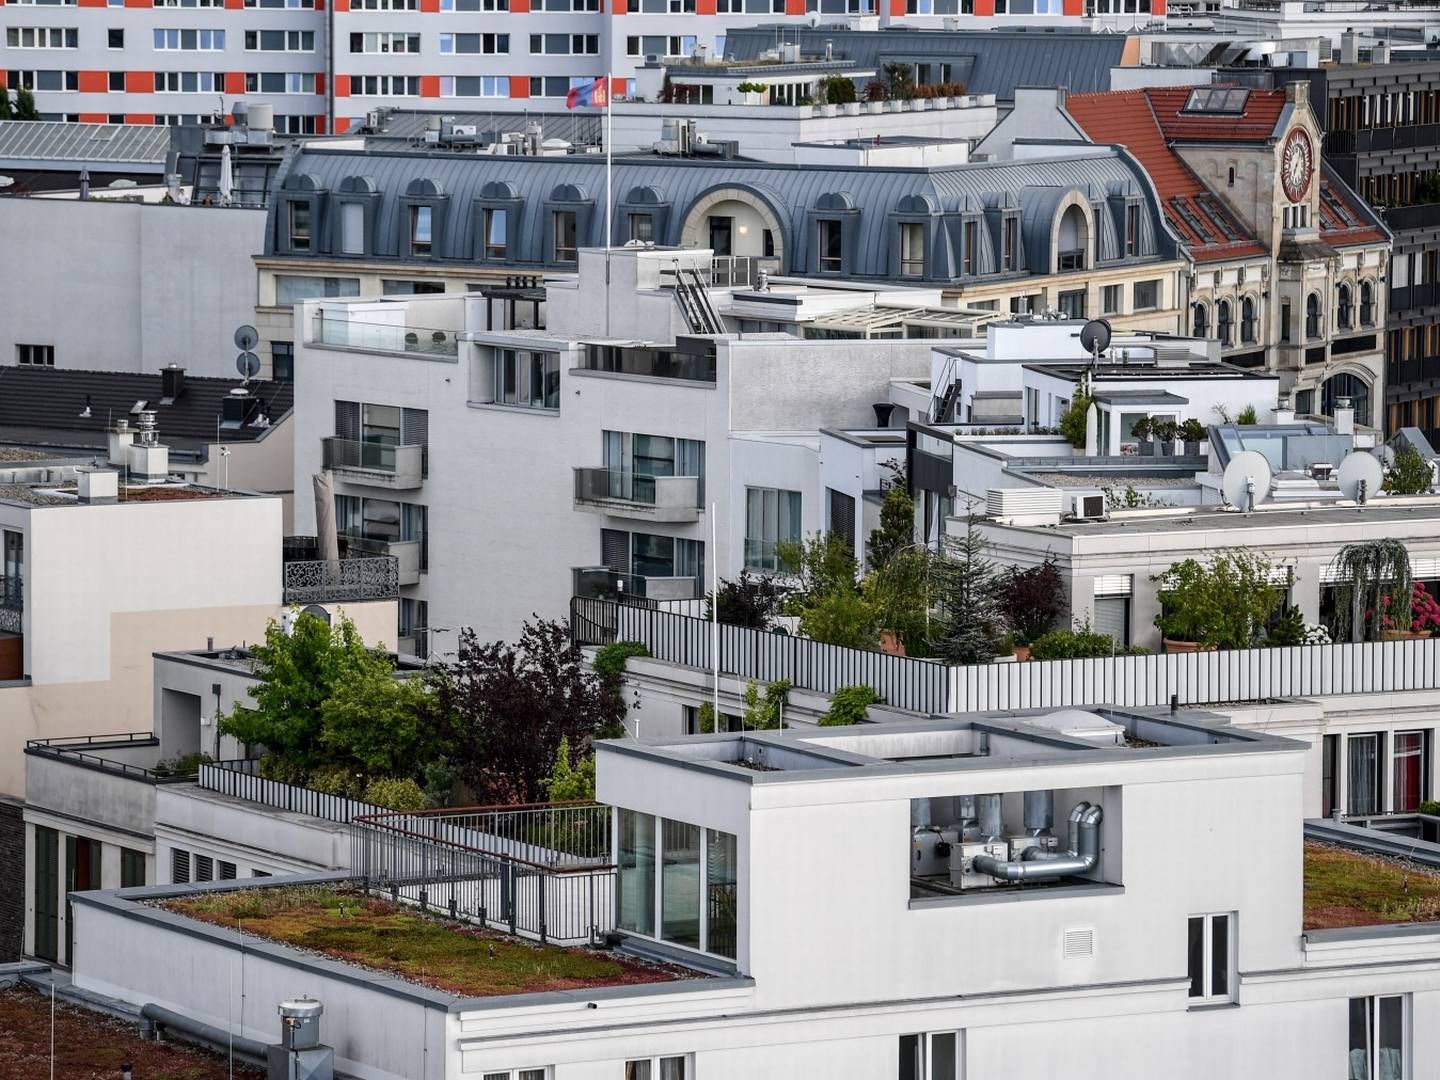 Wohnungen in Berlin-Mitte (Symbolbild) | Foto: picture alliance/Britta Pedersen/dpa-Zentralbild/dpa